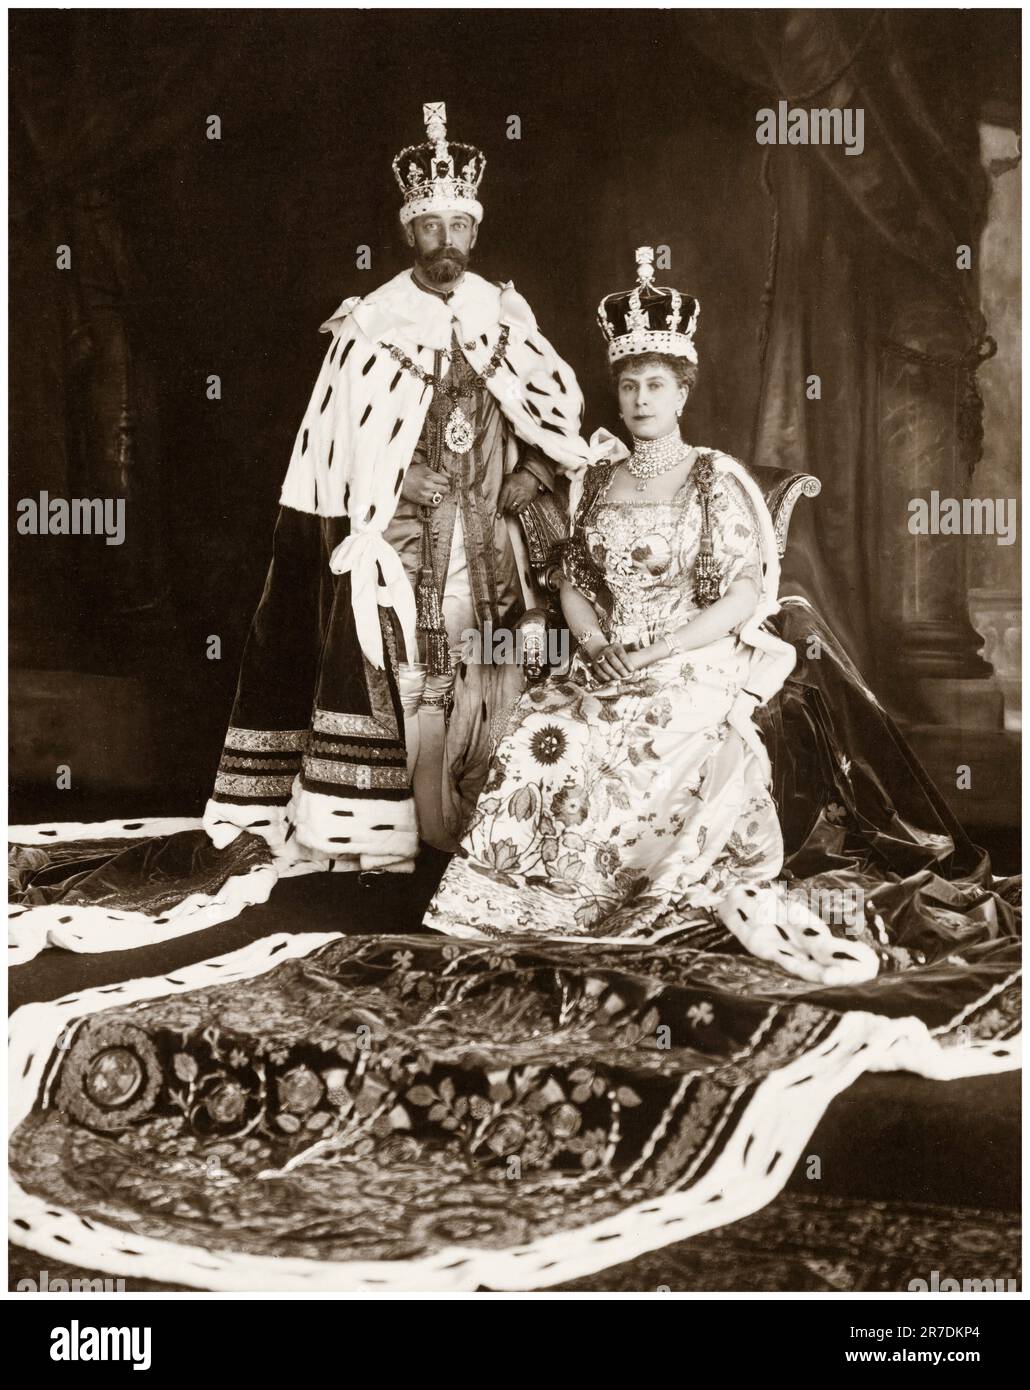 Silueta de corona dorada. Coronas reales, coronación rey y la reina de lujo  tiara siluetas iconos vector conjunto Imagen Vector de stock - Alamy